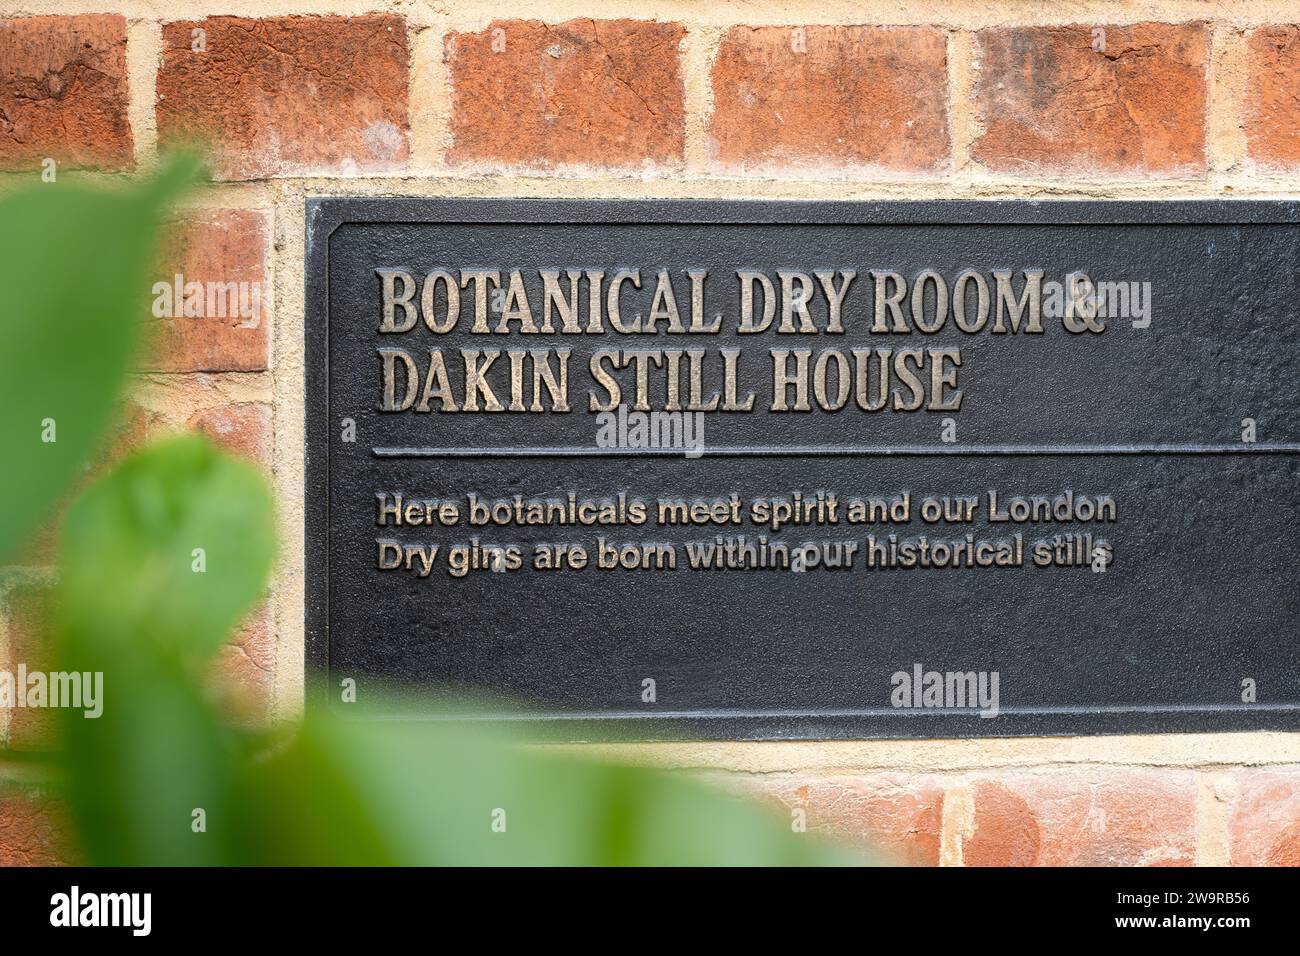 Une plaque en métal indiquant «Botanical Dry Room and Dakin Still House» à Laverstoke Mill - Bombay Sapphire distillerie - une distillerie de gin dans le Hampshire, Royaume-Uni Banque D'Images